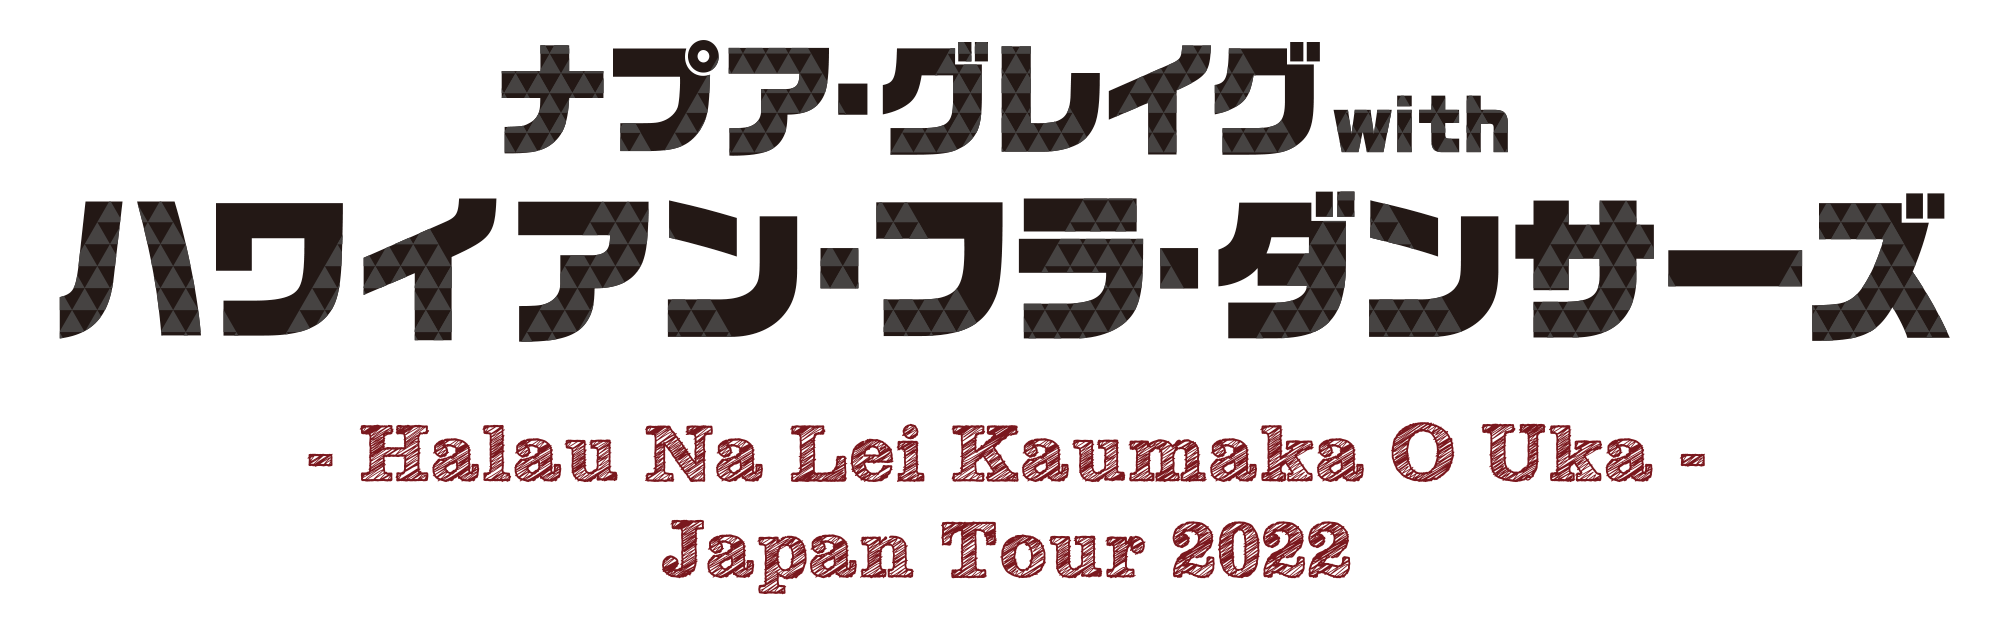 ナプア・グレイグwithハワイアン・フラ・ダンサーズ -Halau Na Lei Kaumaka O Uka- JAPAN TOUR 2022